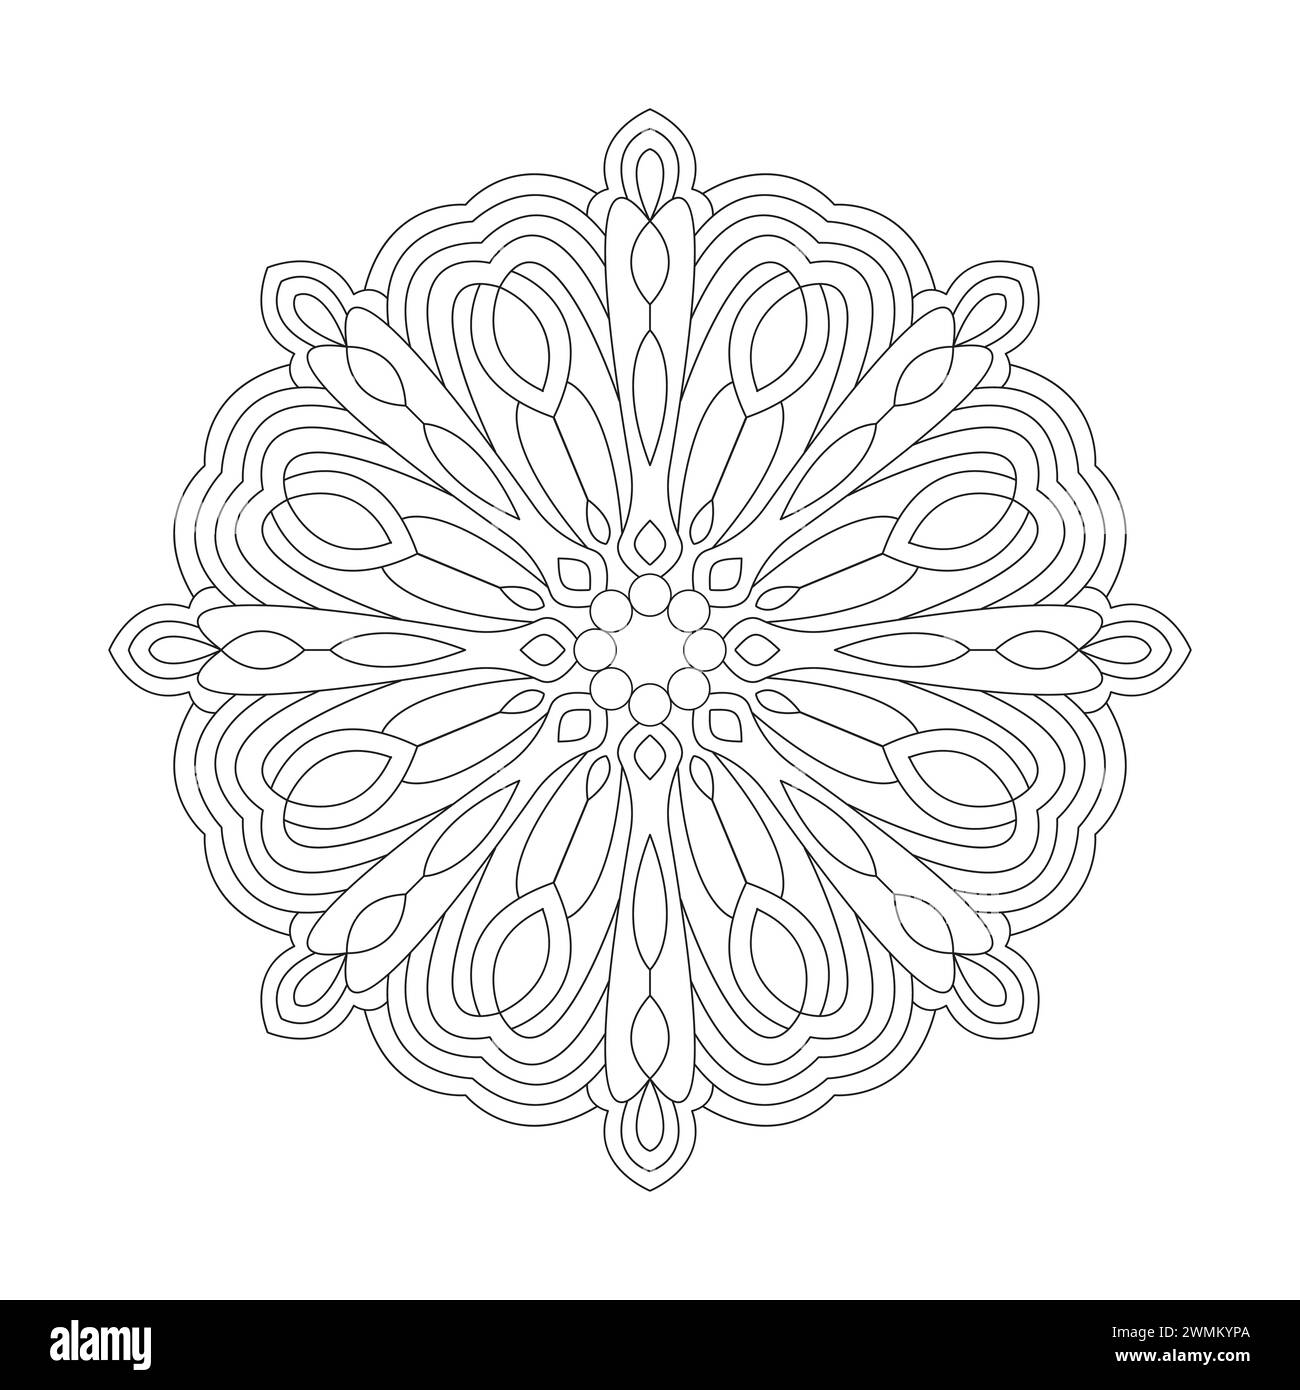 Simplicité Mindfulness Mandala Coloring Book page pour l'intérieur du livre kdp. Pétales paisibles, capacité à se détendre, expériences cérébrales, Haven harmonieux, paix Illustration de Vecteur